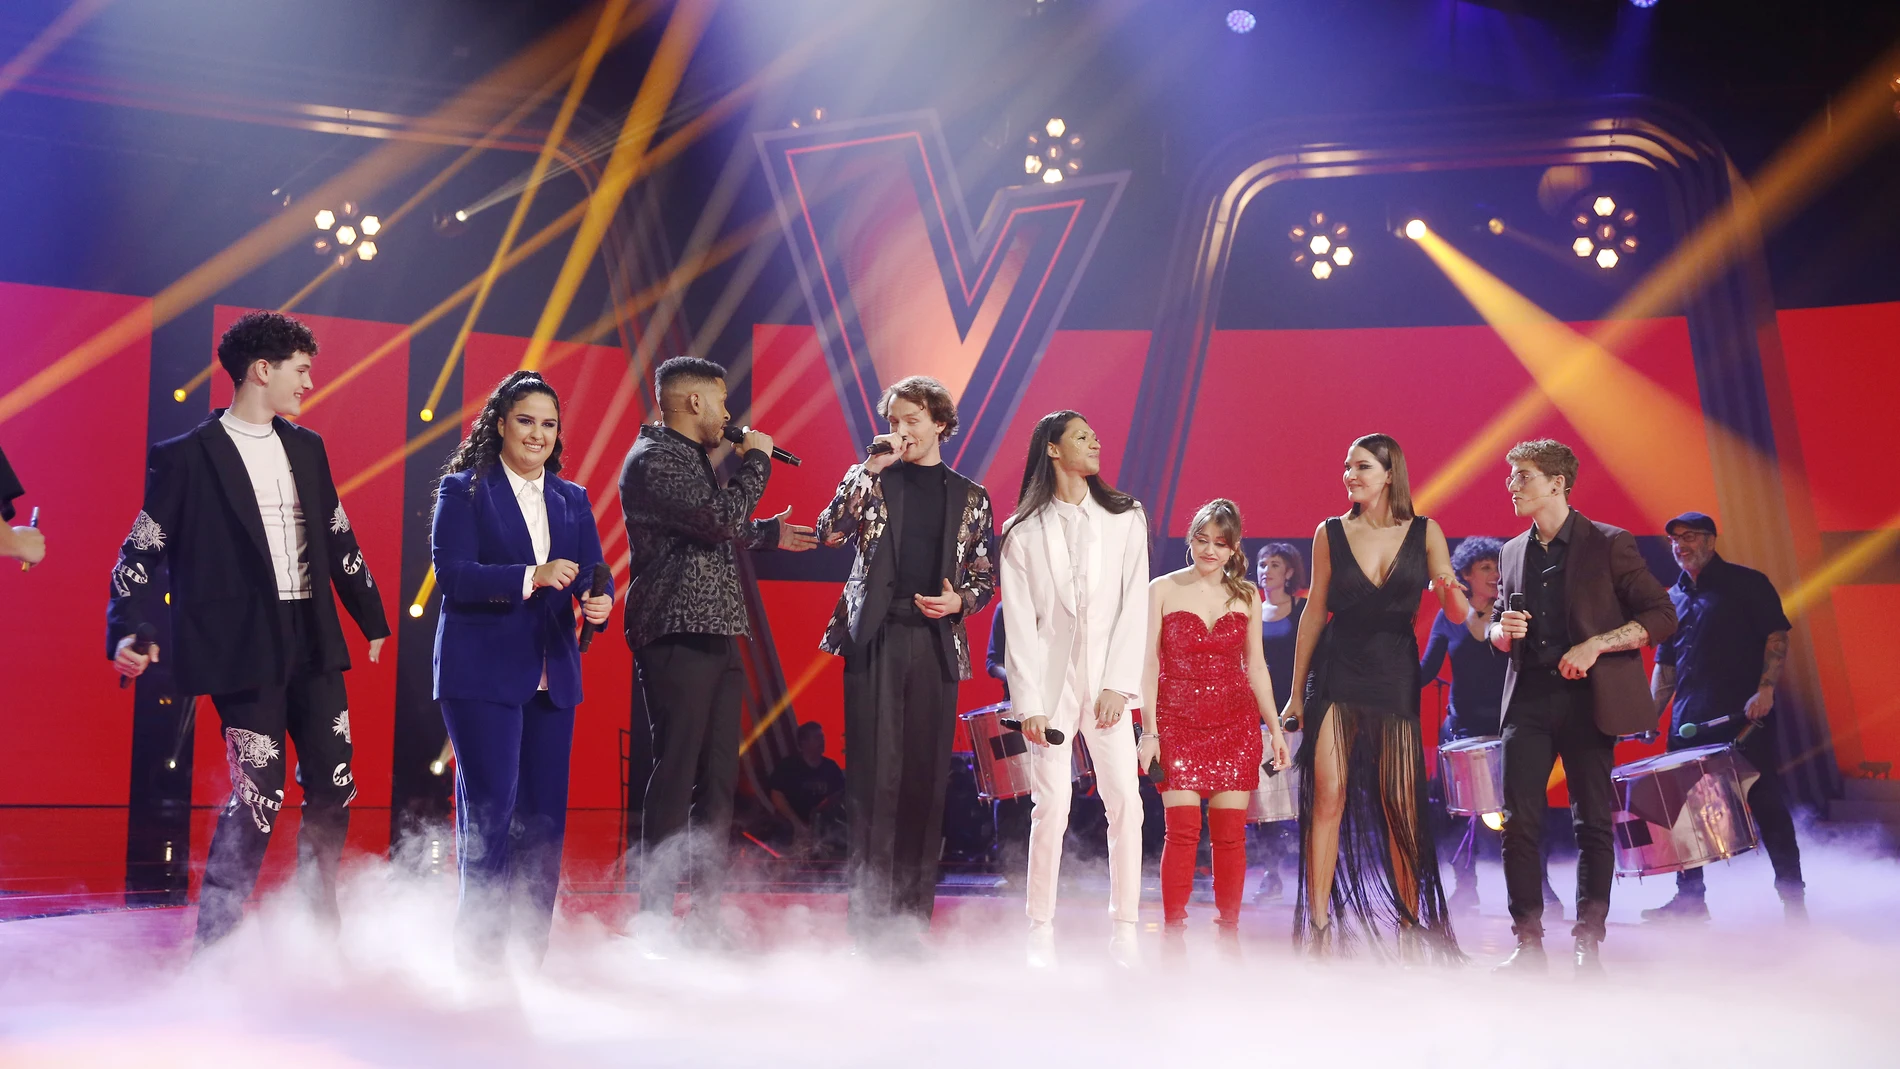 Los ocho semifinalistas de ‘La Voz’ inauguran la Semifinal cantando ‘Hay que vivir el momento’ de Manuel Carrasco 